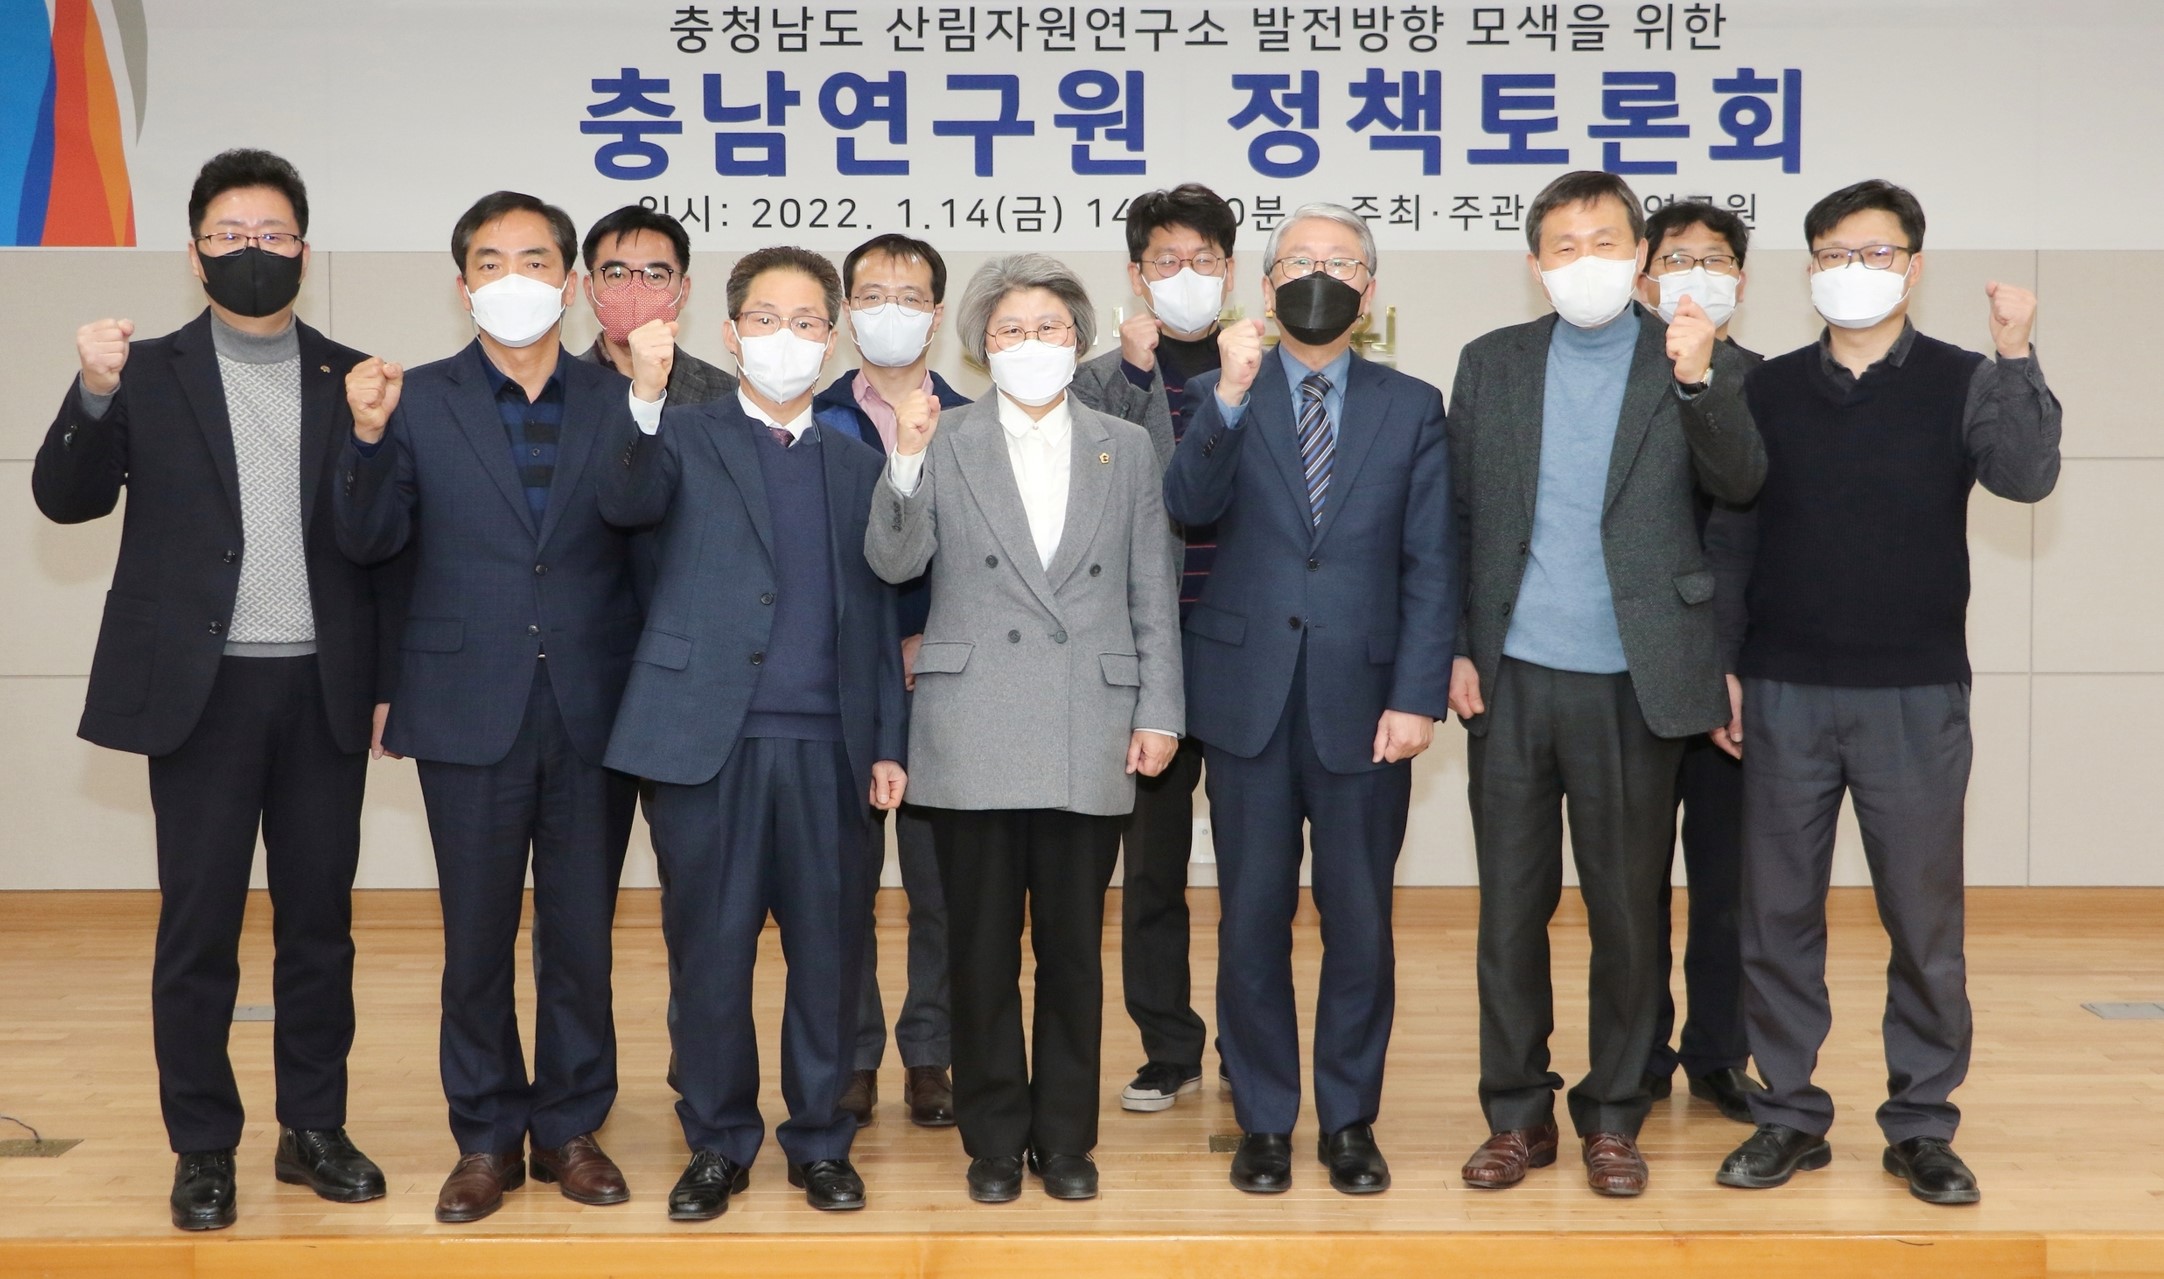 충남연구원, ‘충남산림자원연구소 발전 방향’ 정책토론회 개최